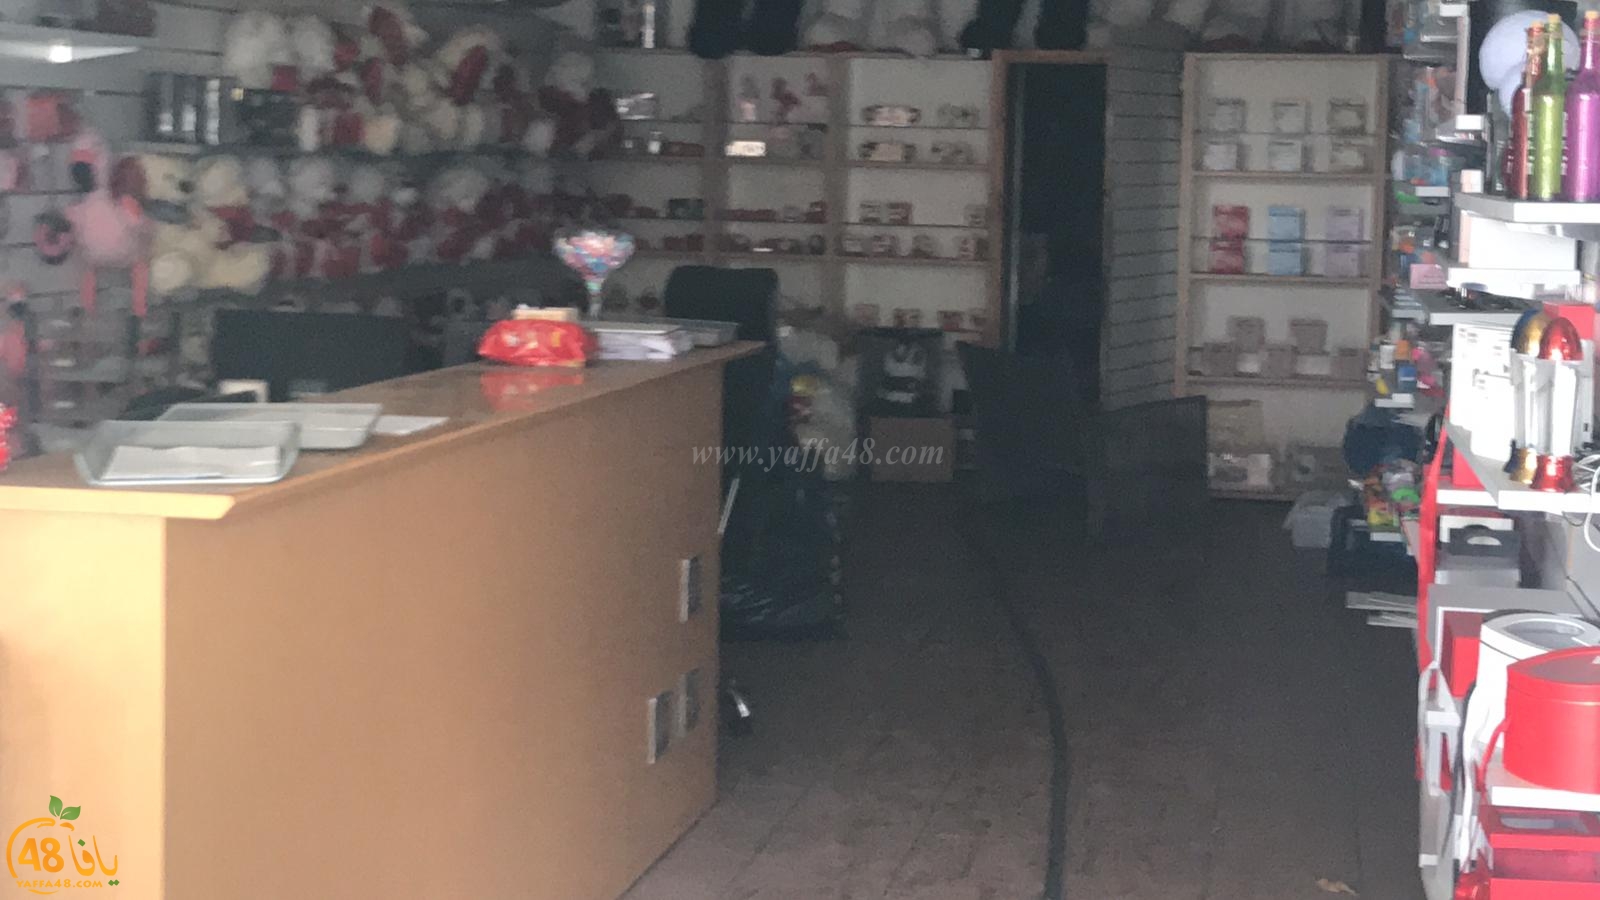  بالفيديو: حريق داخل متجر لبيع الهدايا في مدينة يافا دون اصابات 